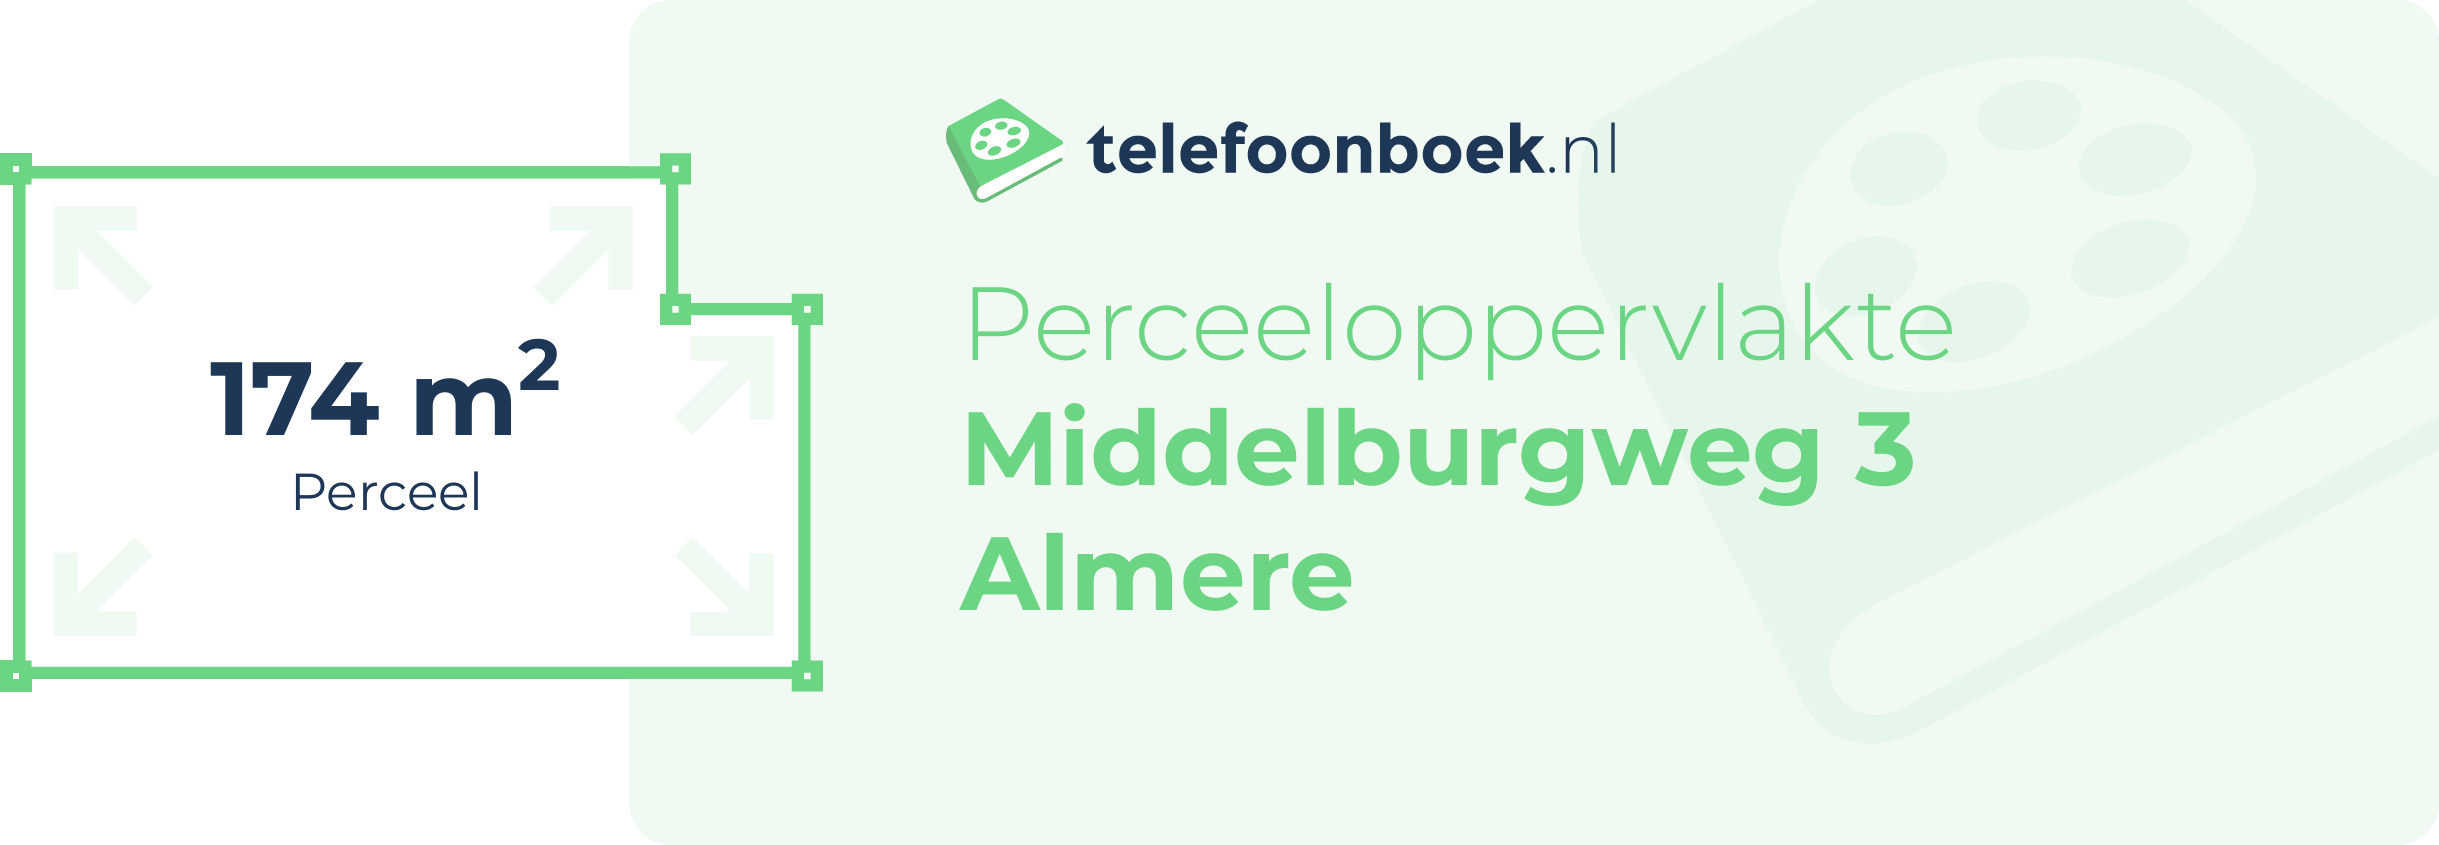 Perceeloppervlakte Middelburgweg 3 Almere